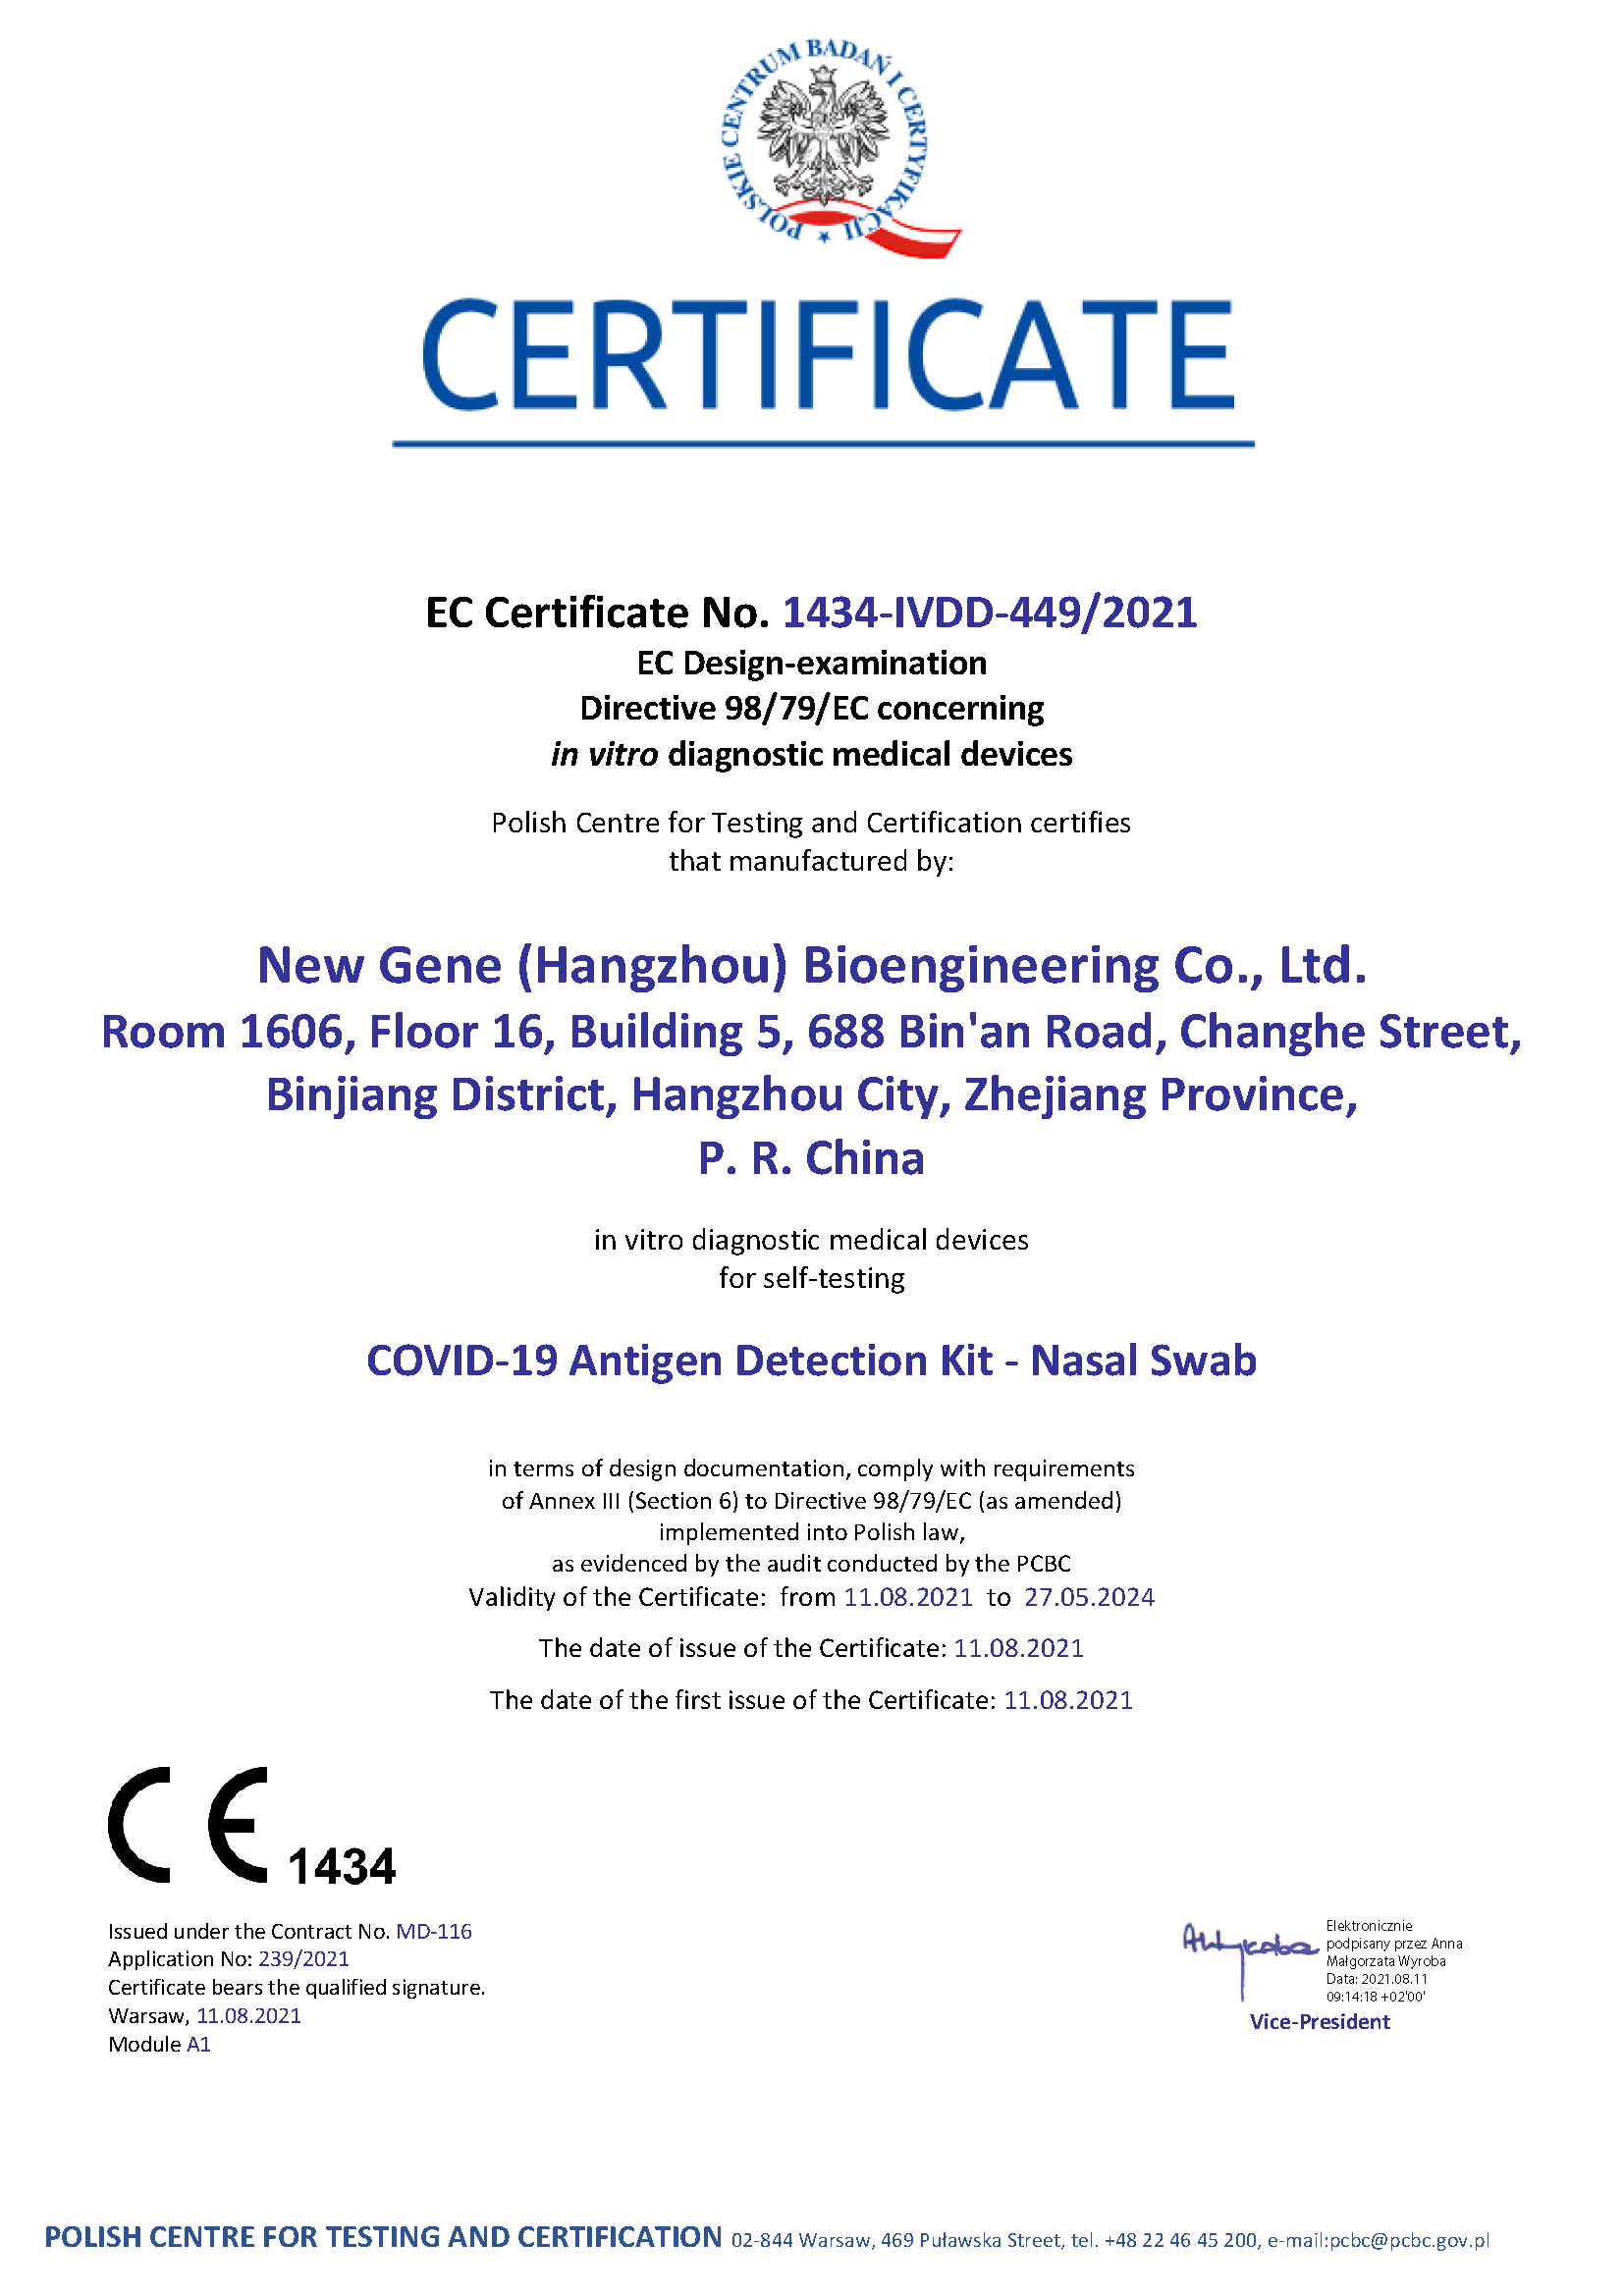 Nuevo kit de detección de antígeno Gene COVID-19 - Certificado de autoprueba (PCBC 1434)